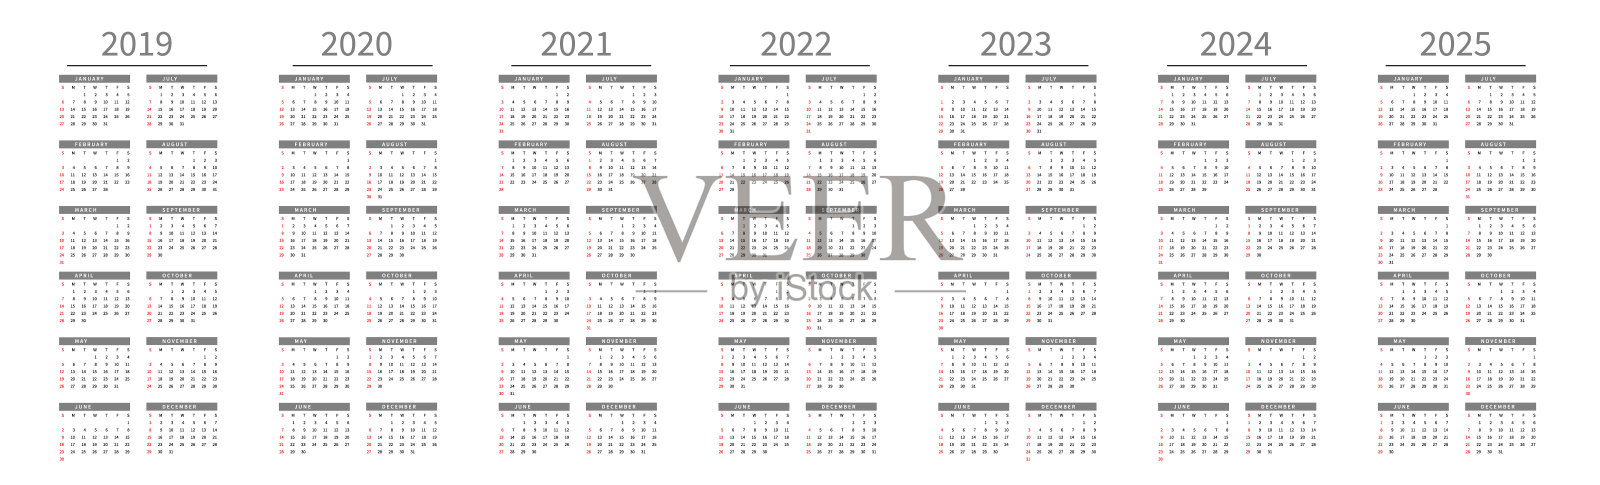 模型简单的日历布局2019年至2025年。周日开始一周设计模板素材